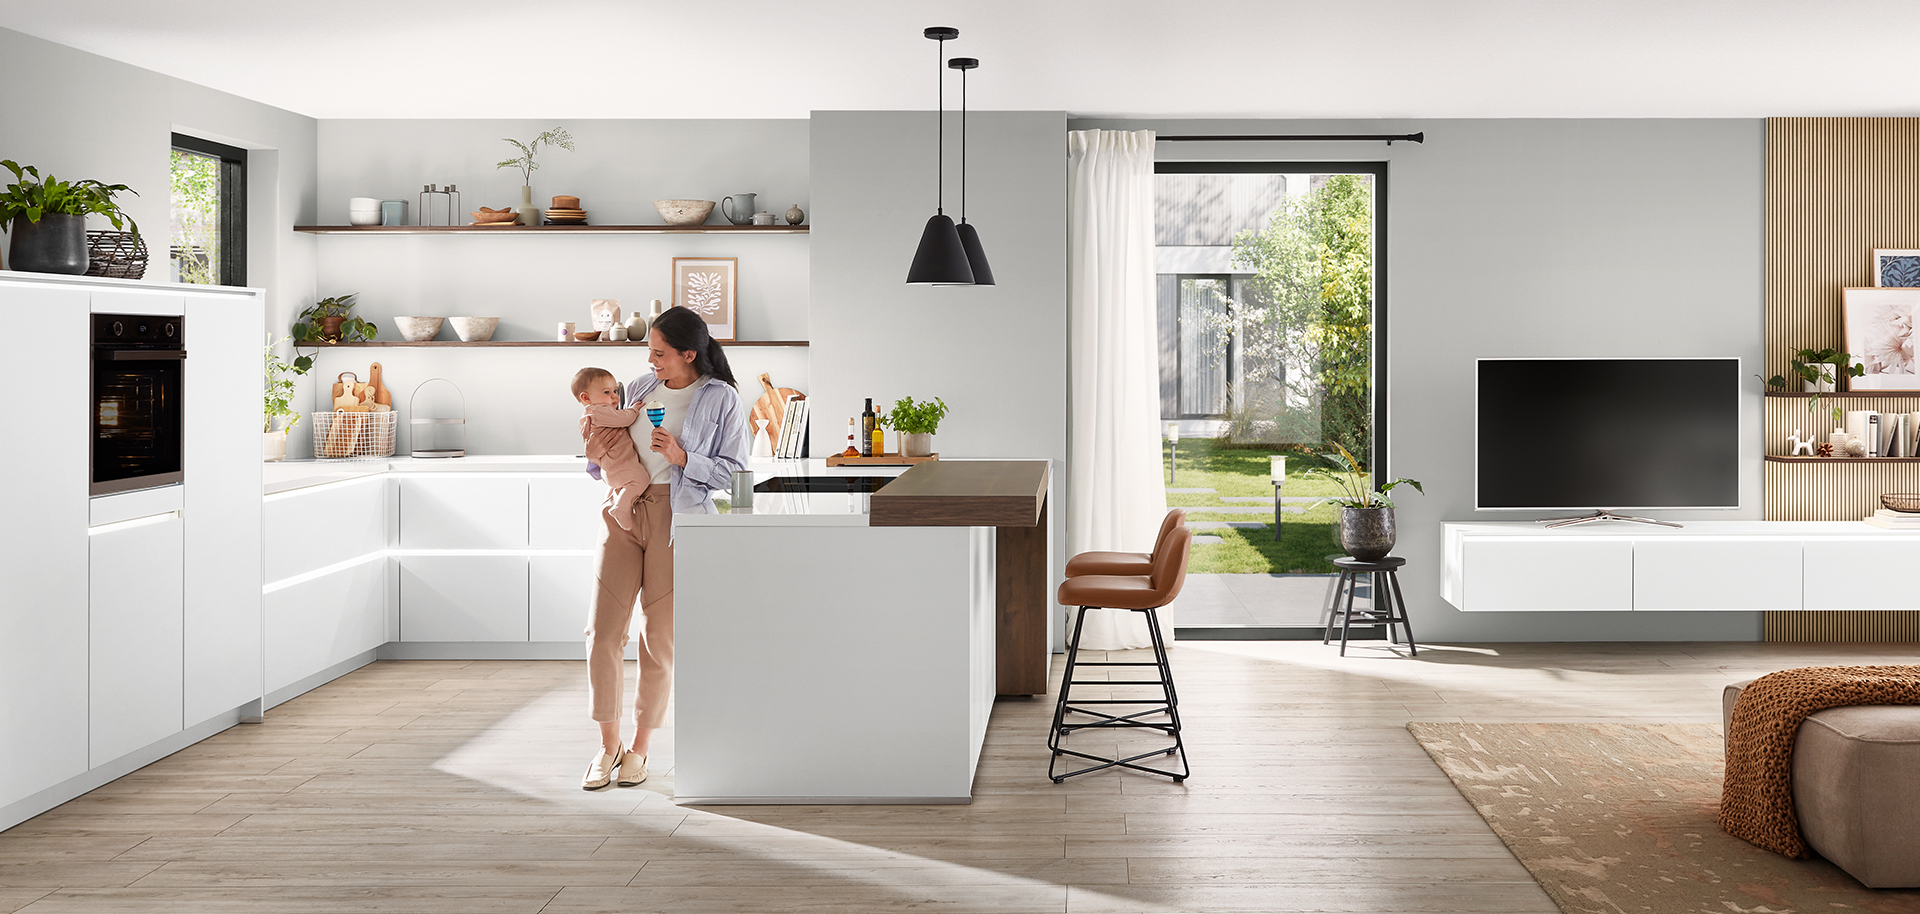 Interni di cucina moderni con un design pulito e minimalista con armadi bianchi, un'isola centrale e una giovane madre che tiene amorevolmente in braccio il suo bambino.